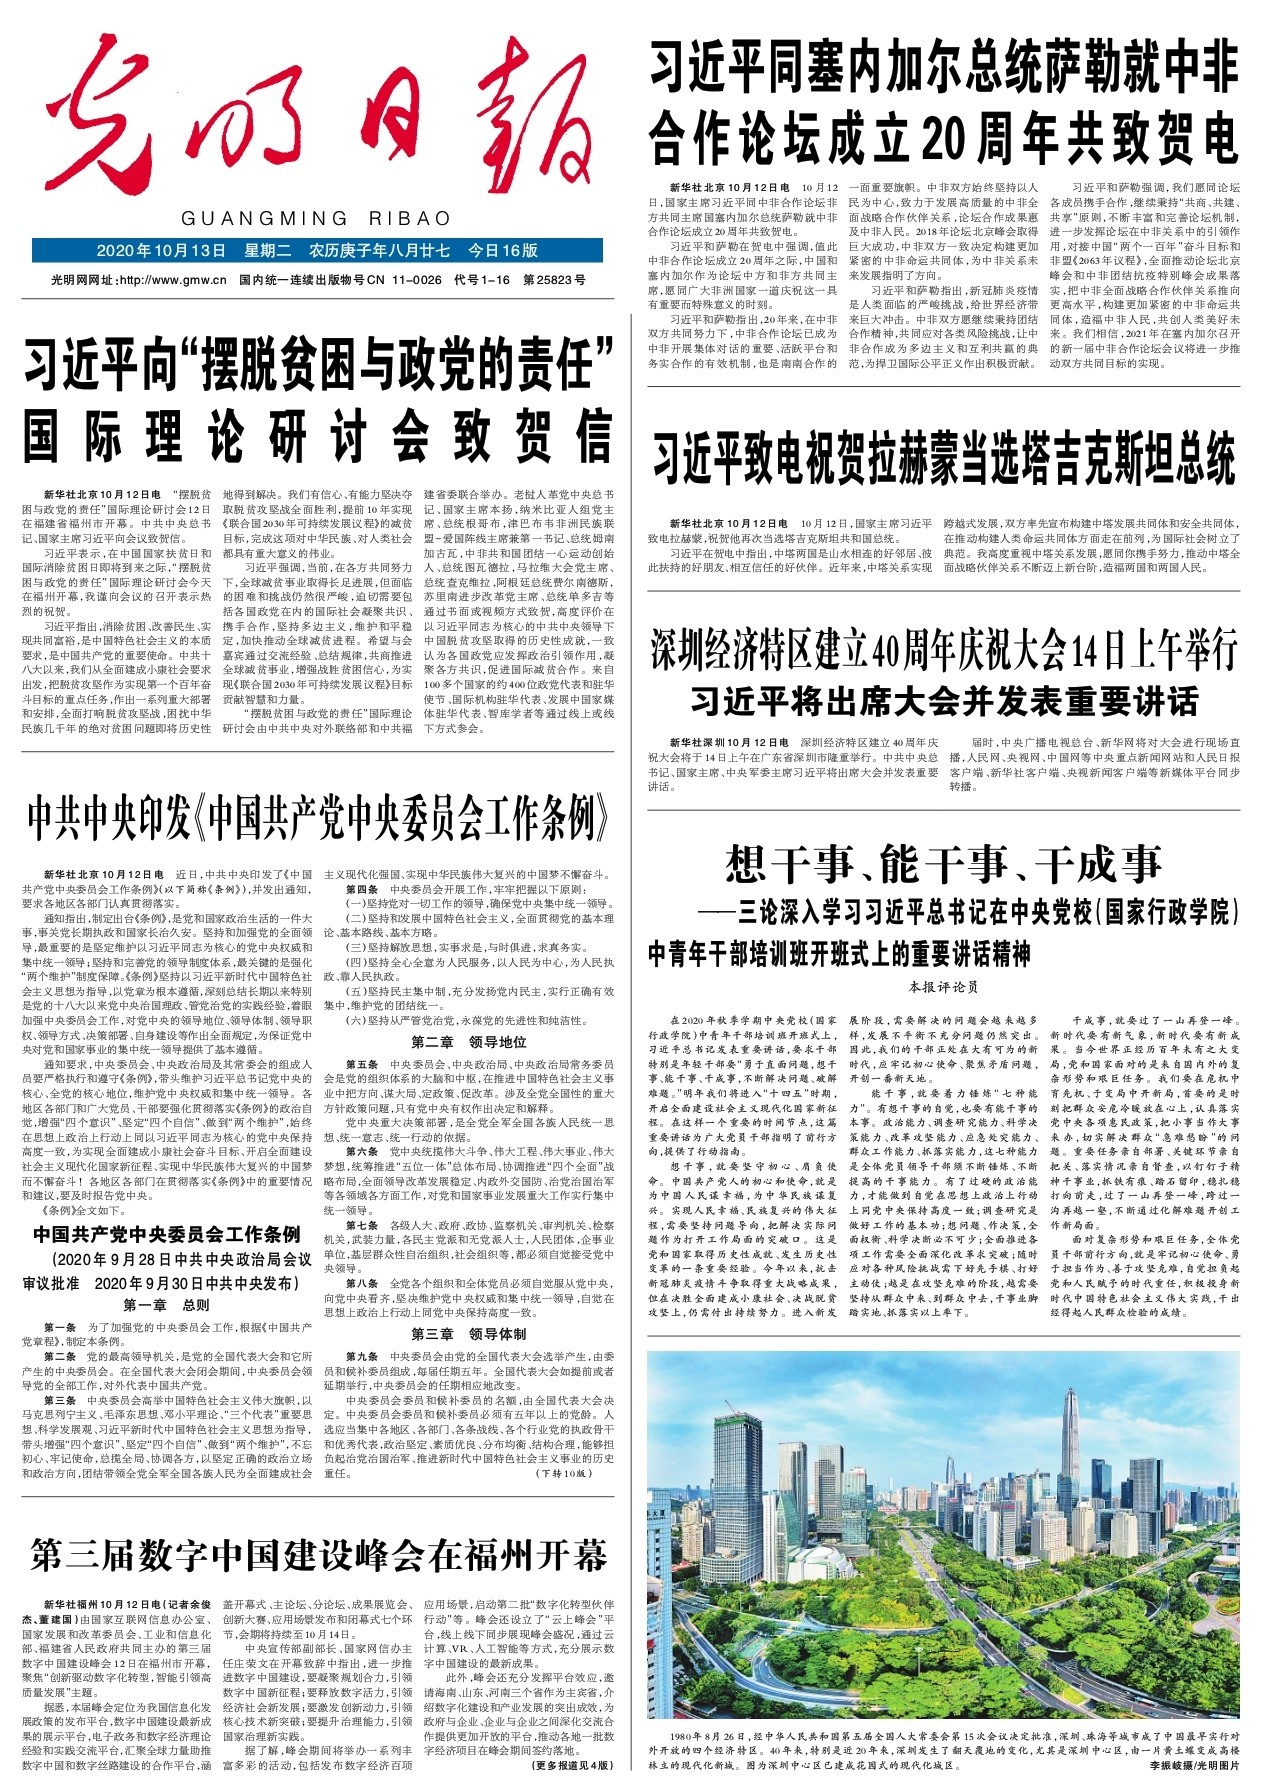 第三届数字中国建设峰会在福州开幕 光明日报 光明网